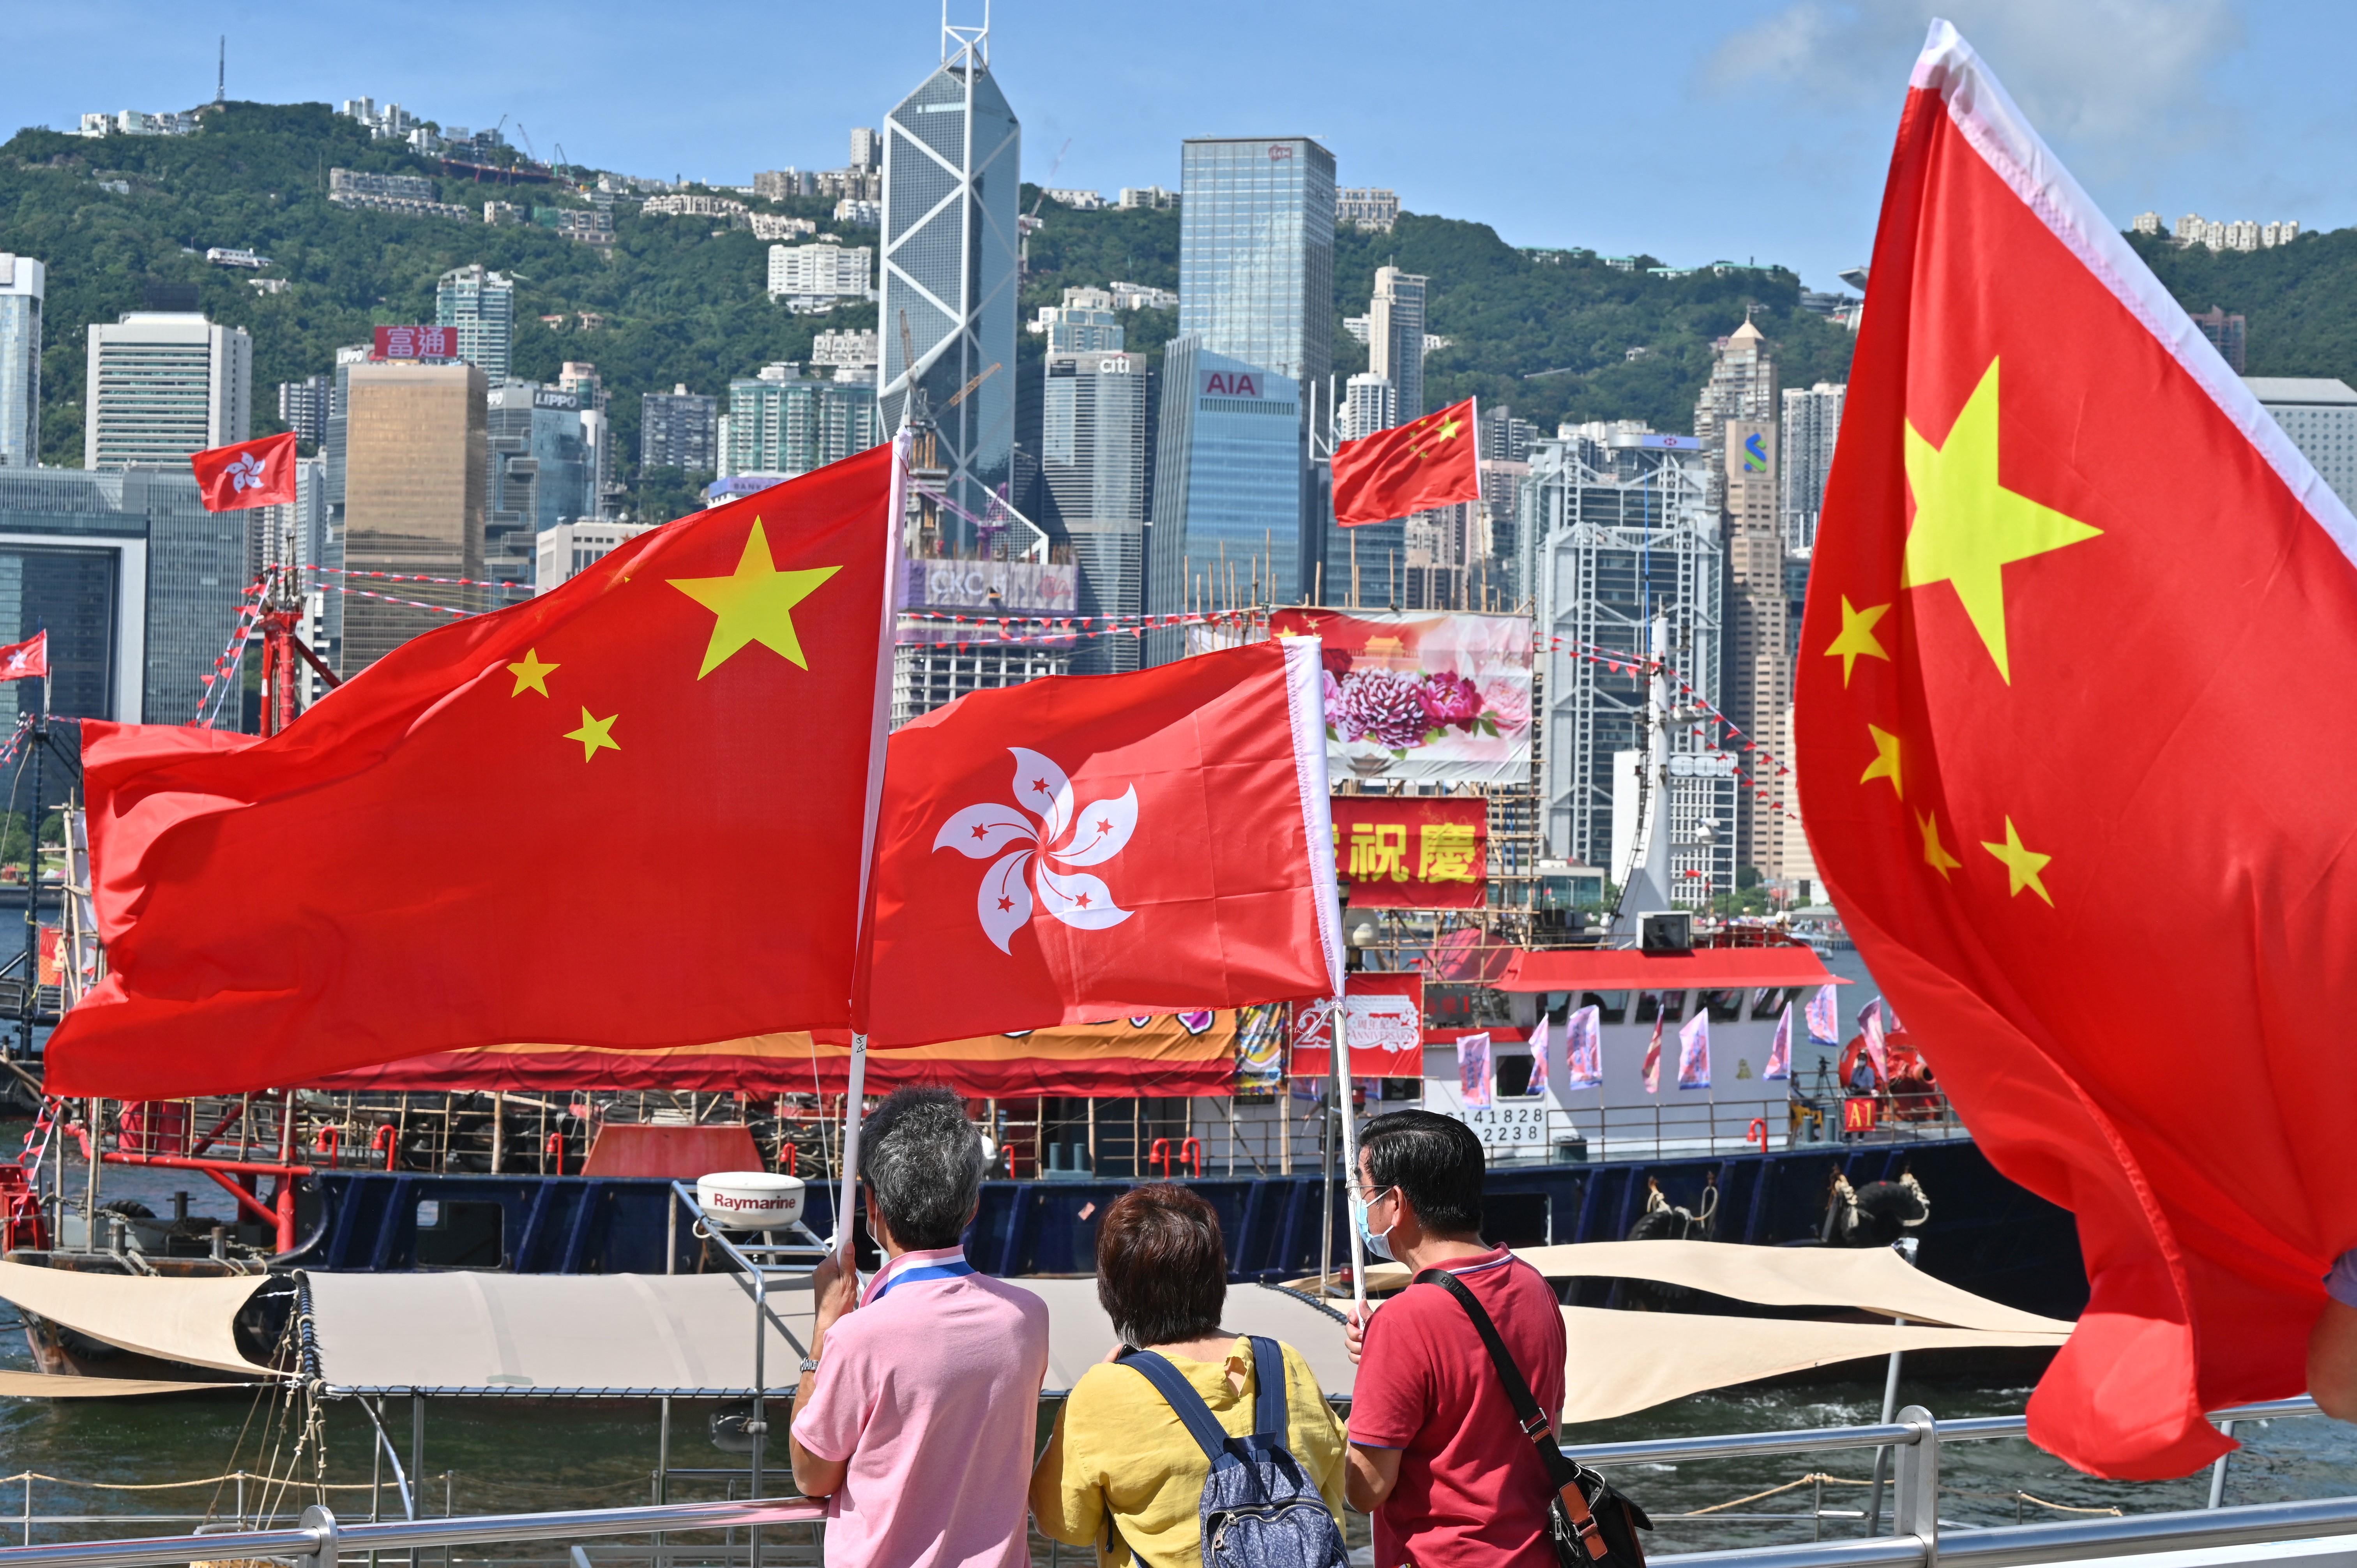 Hồng Kông: Biến động và tương lai
Đất nước Hồng Kông đang chứng kiến những biến động rất lớn trong thời gian vừa qua, tuy nhiên tương lai của nơi đây luôn rất rộng mở và hứa hẹn. Hãy cùng đến với bức ảnh liên quan đến Hồng Kông, để khám phá sự đôi lứa của một đất nước đang vươn lên từ những biến động.